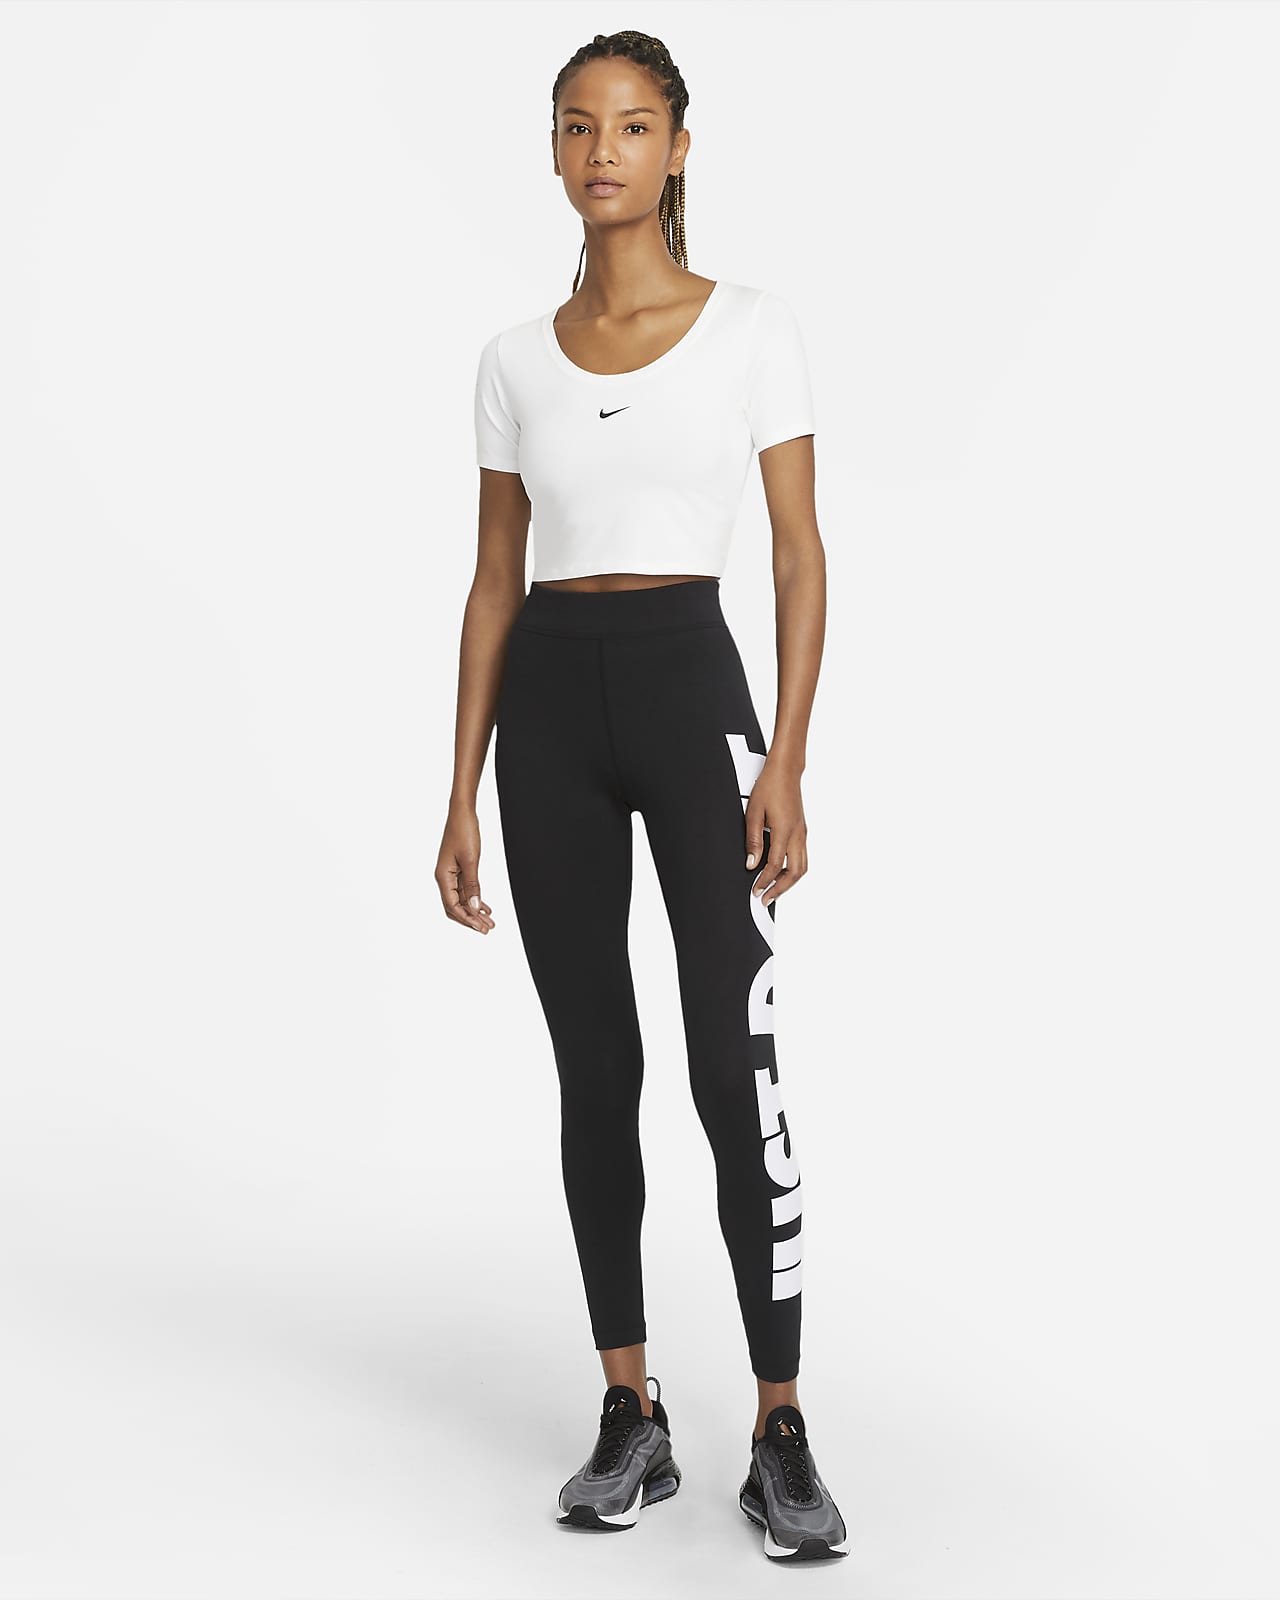 Nike Sportlegging - Maat L - Vrouwen - zwart